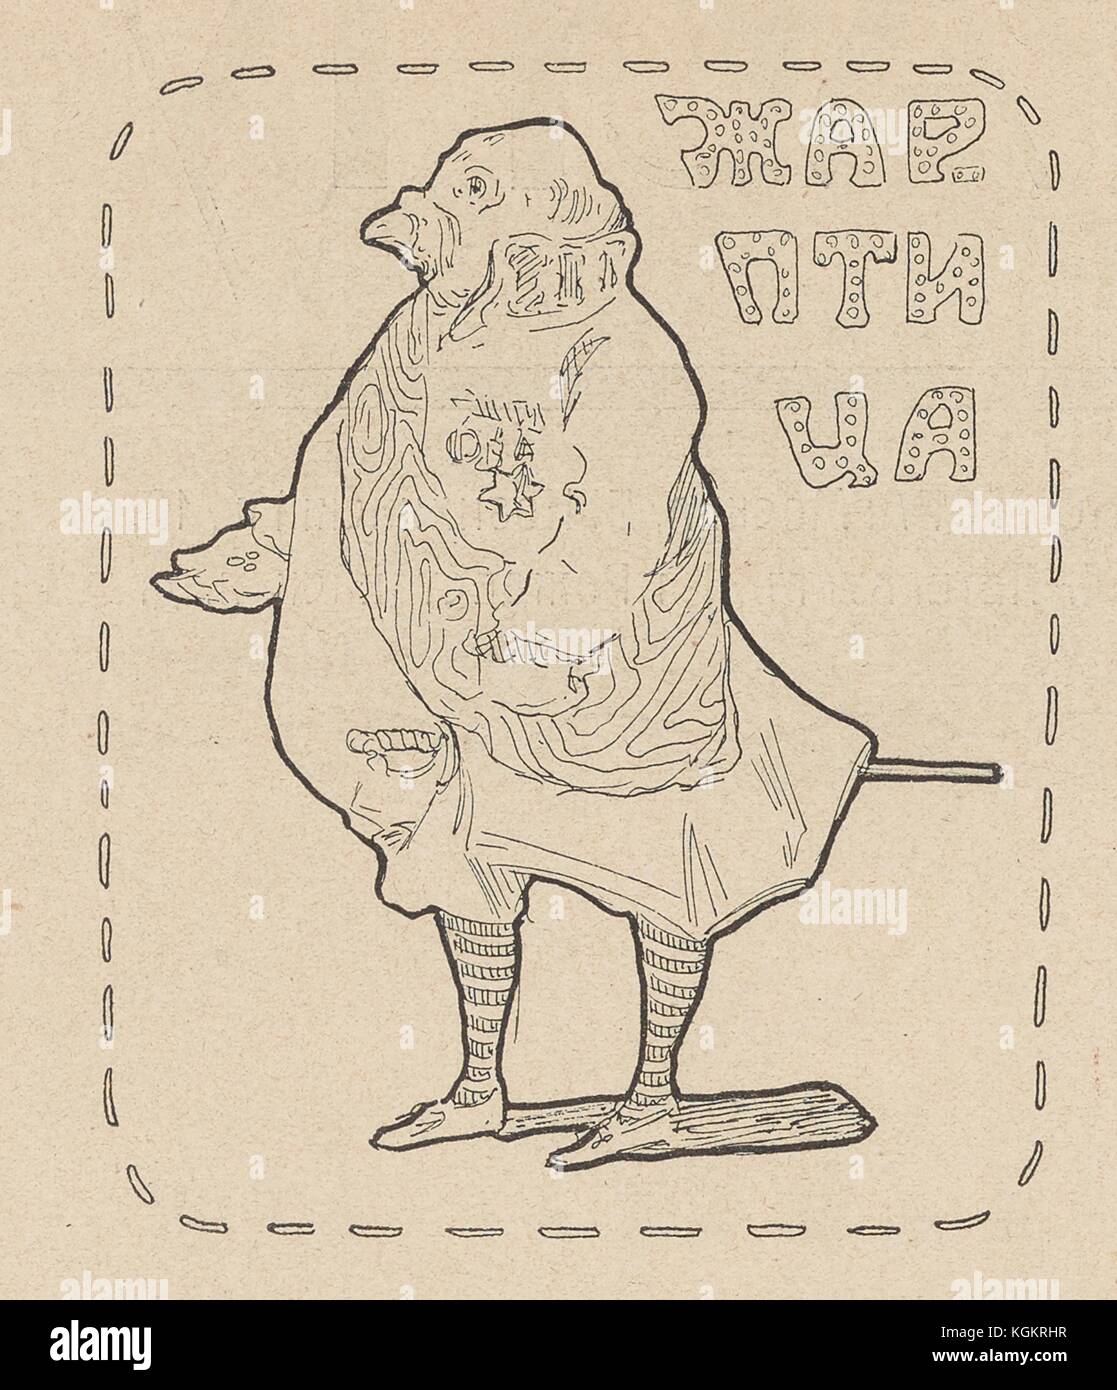 Illustration de la revue satirique russe Na Rasputi (à la croisée des chemins) représentant le tsar Nicolas II comme un oiseau avec le texte « oiseau de feu », se référant à un oiseau incandescent mythique du folklore slave, 1906. () Banque D'Images